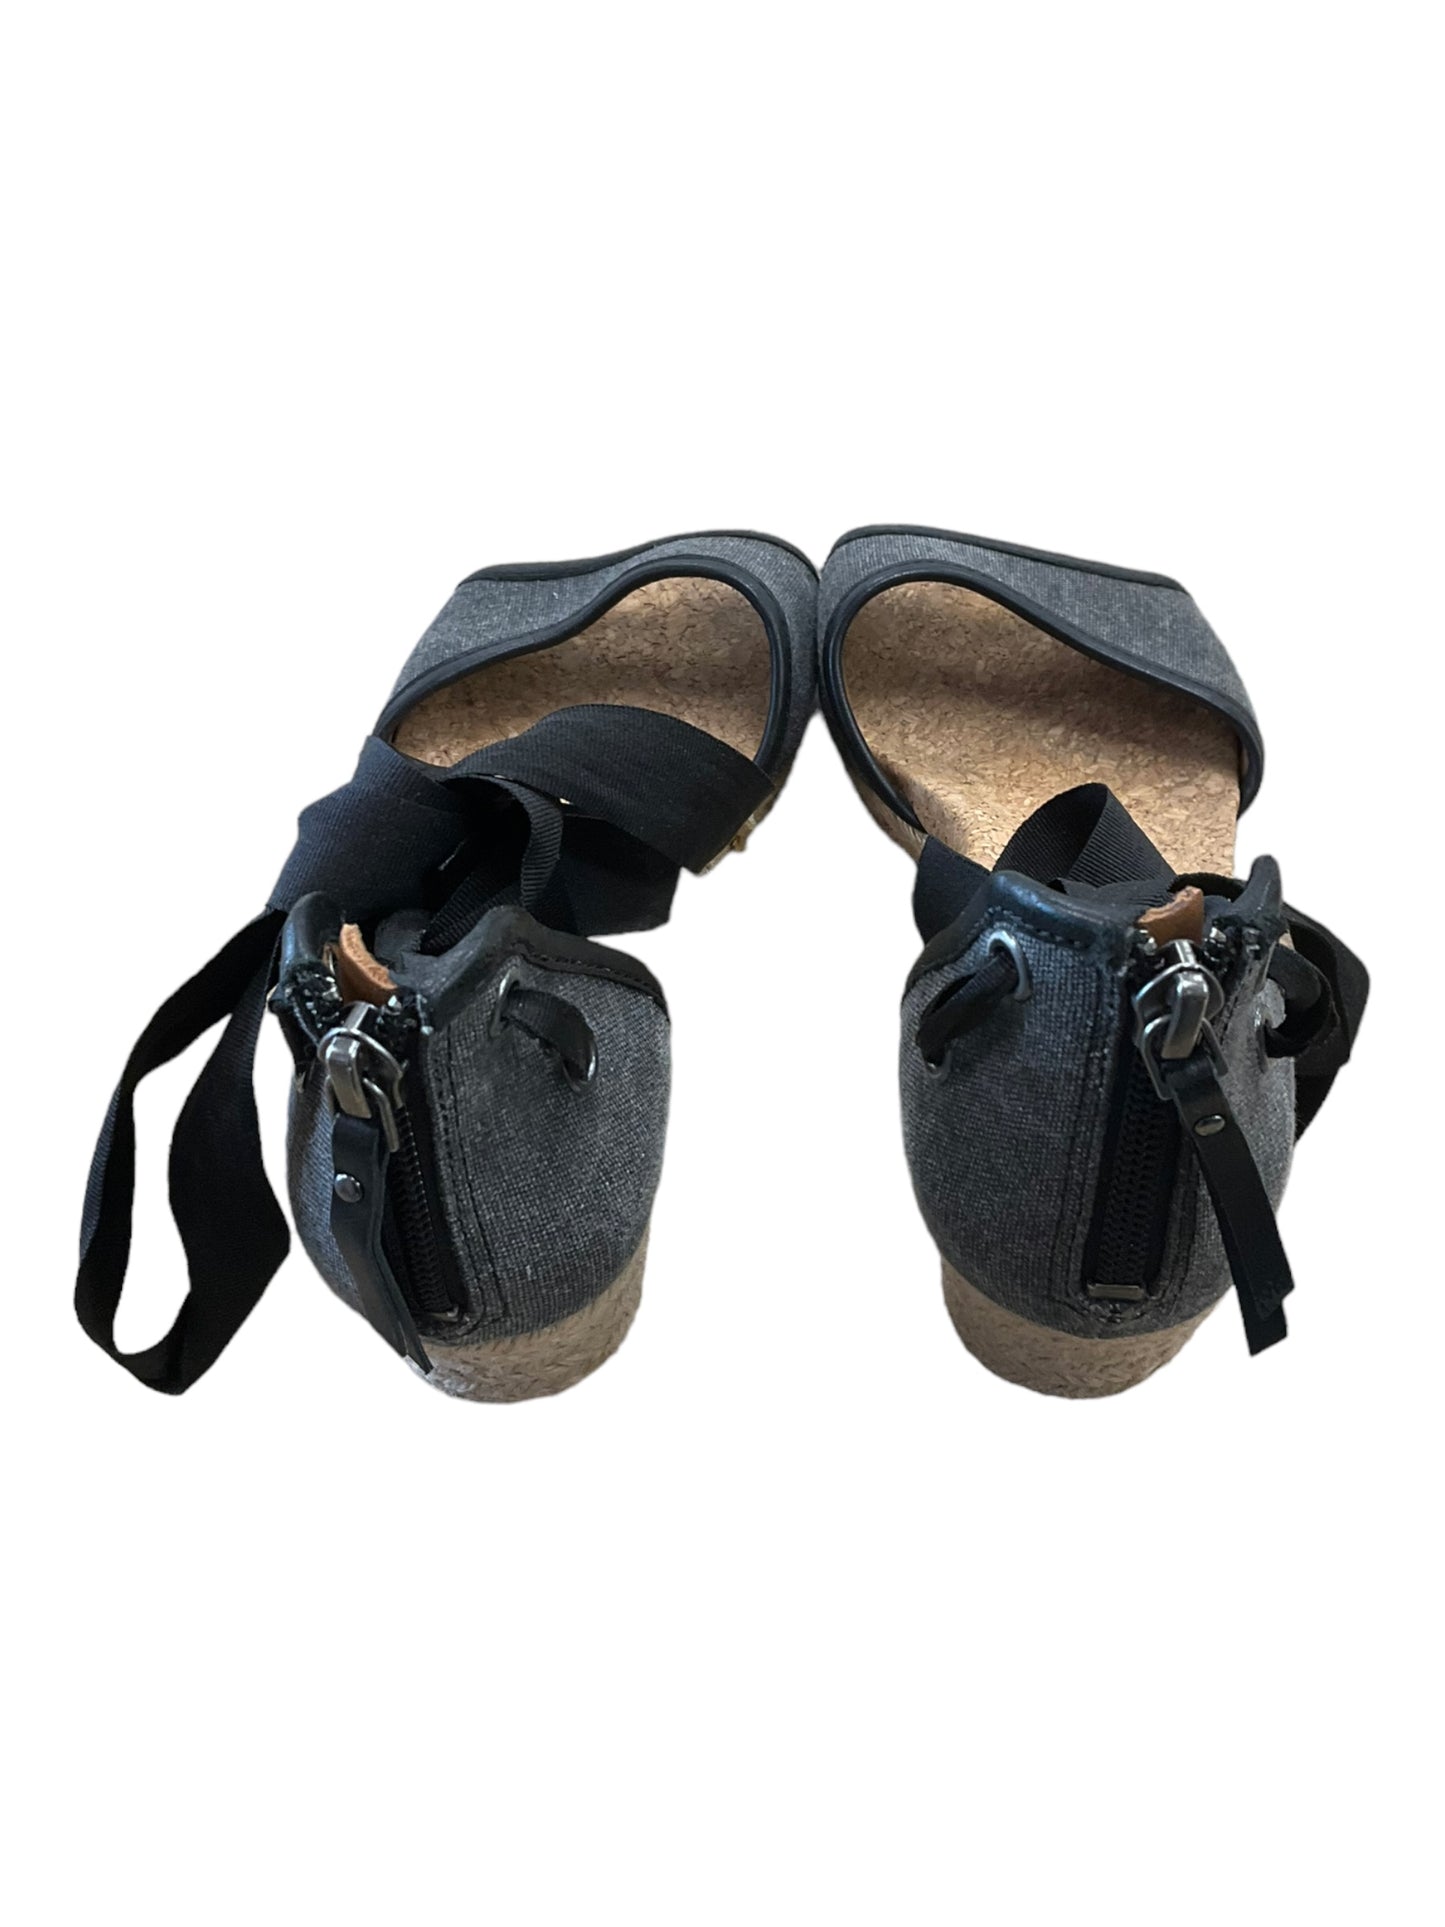 Sandals Designer By Ugg  Size: 8